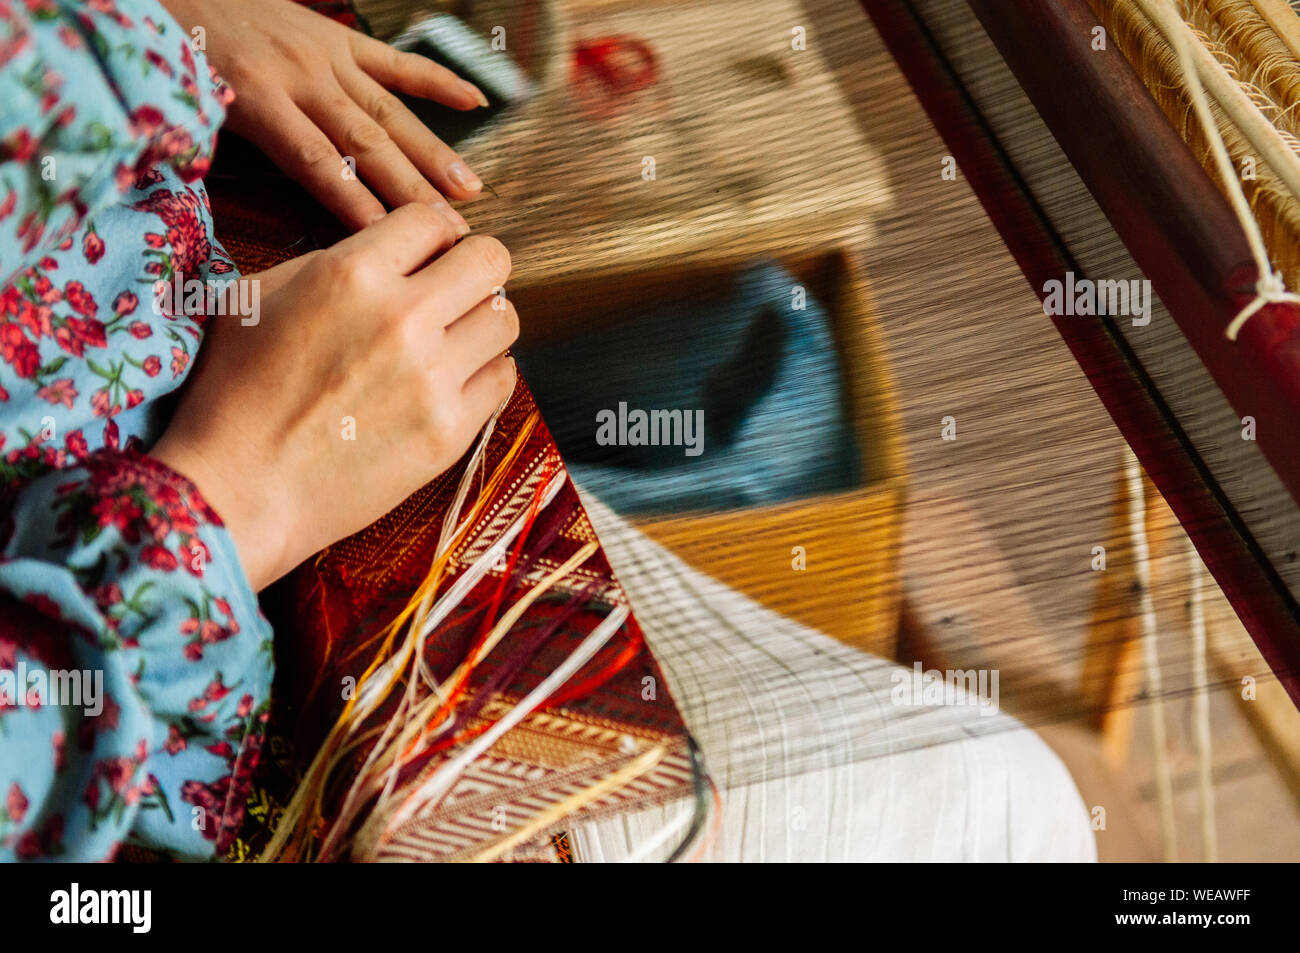 Jeune femme mains travaillant sur métier à tisser en bois vintage avec des fibres de soie, tissage, travail de l'artisanat de l'outil. Concept du tourisme culturel Banque D'Images